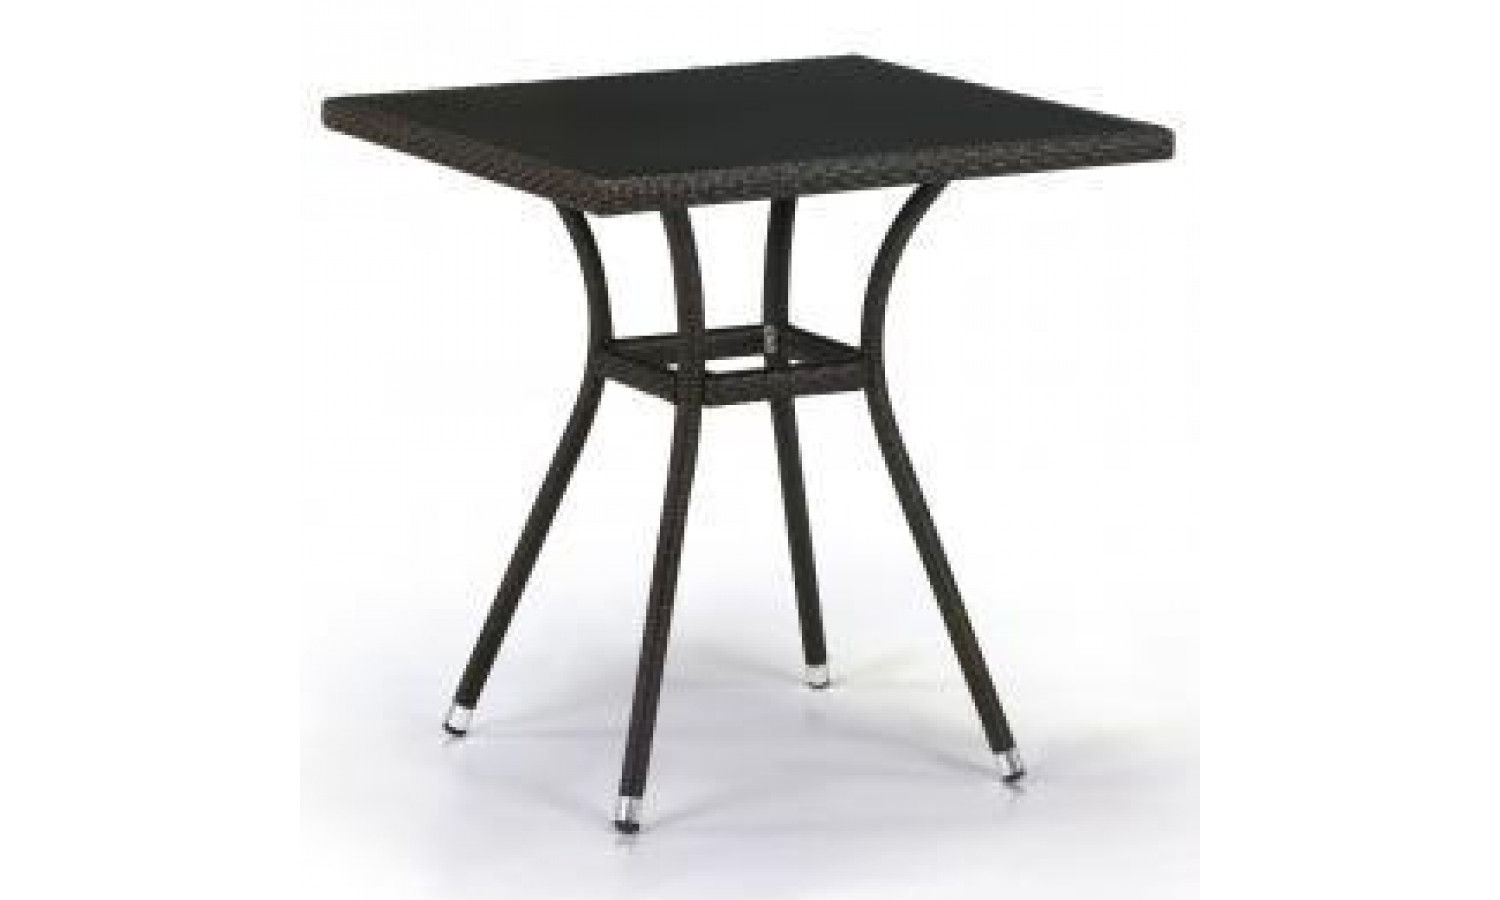 Плетеный стол T282BNS-W53-70x70 Brown